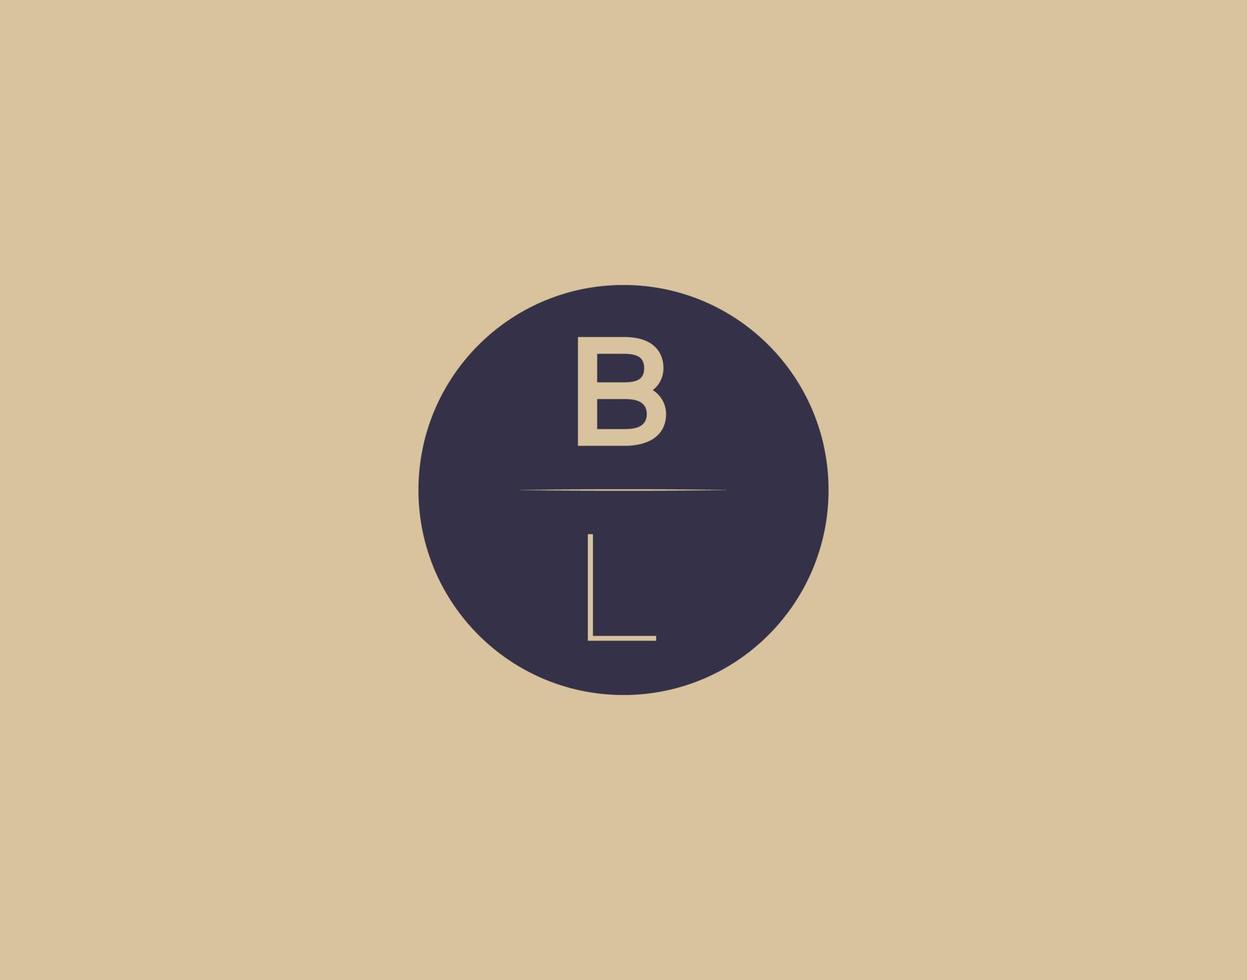 BL letter modern elegant logo design vector images